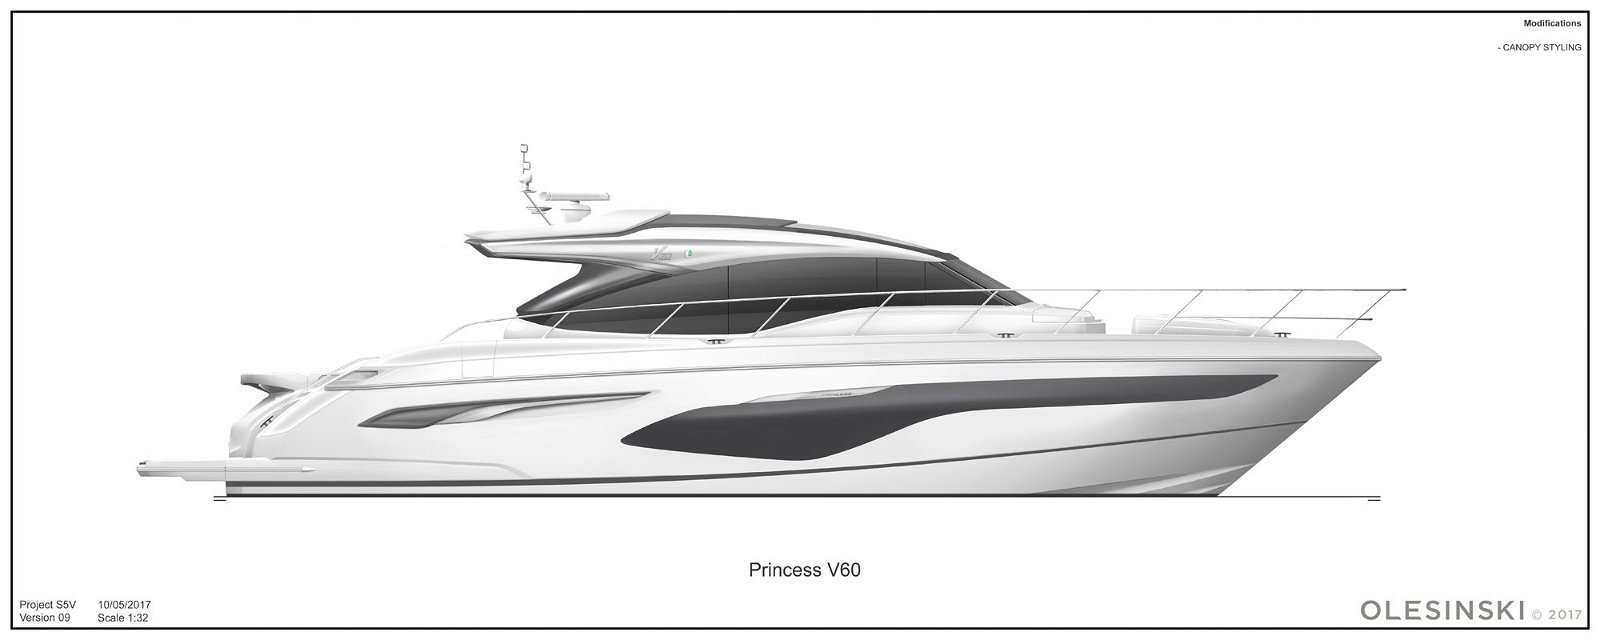 v60-profile-white-hull